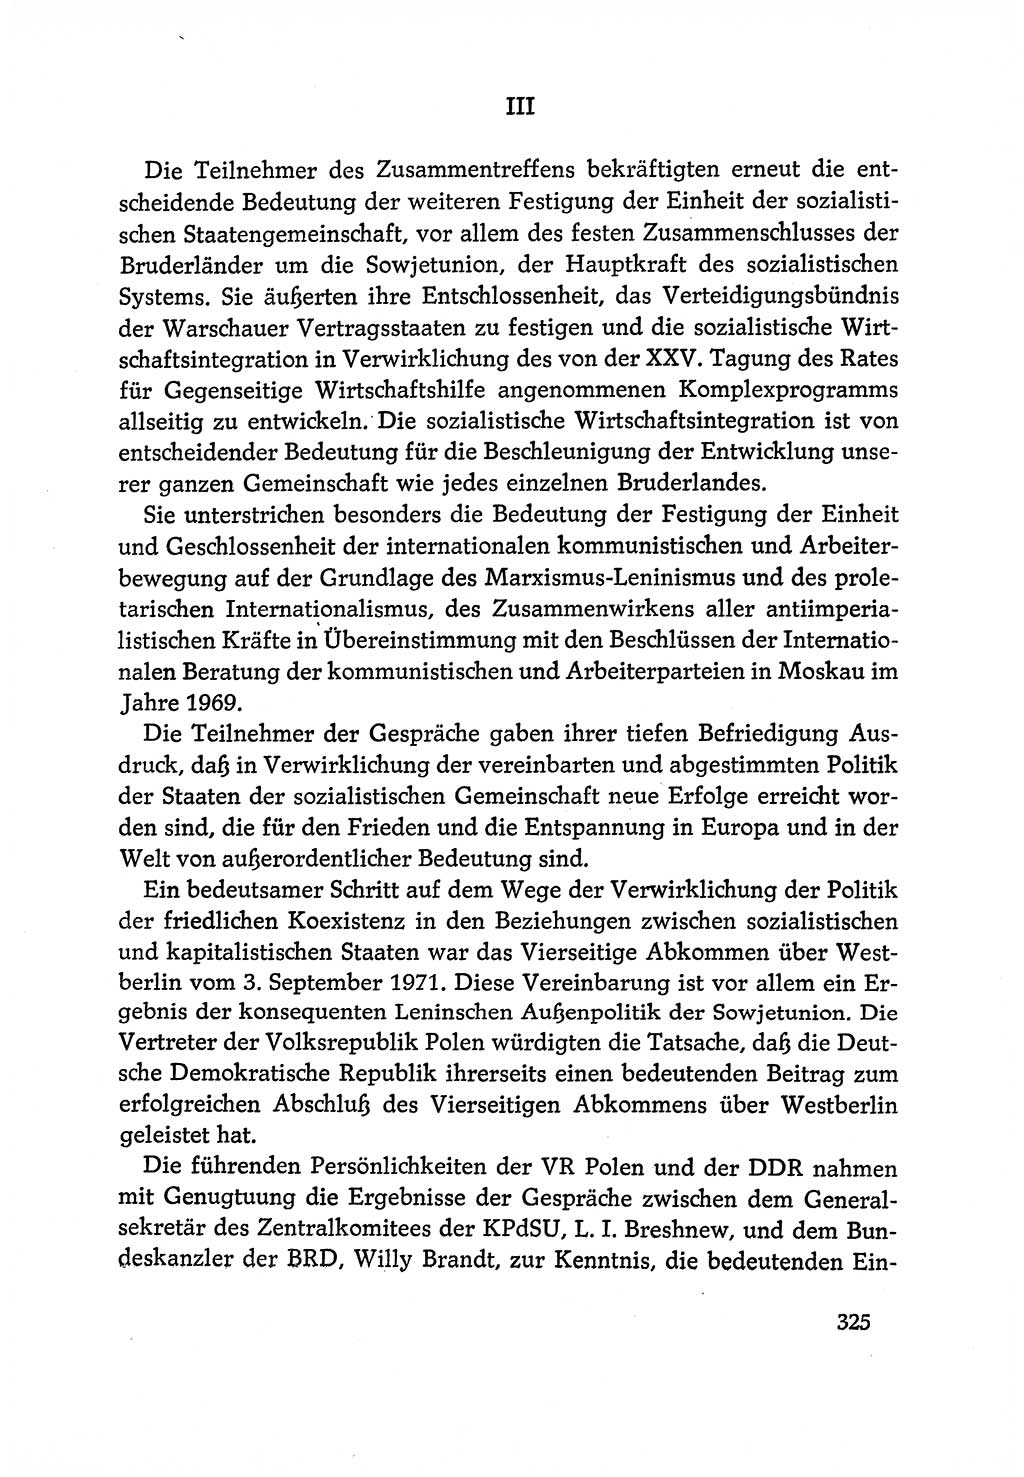 Dokumente der Sozialistischen Einheitspartei Deutschlands (SED) [Deutsche Demokratische Republik (DDR)] 1970-1971, Seite 325 (Dok. SED DDR 1970-1971, S. 325)